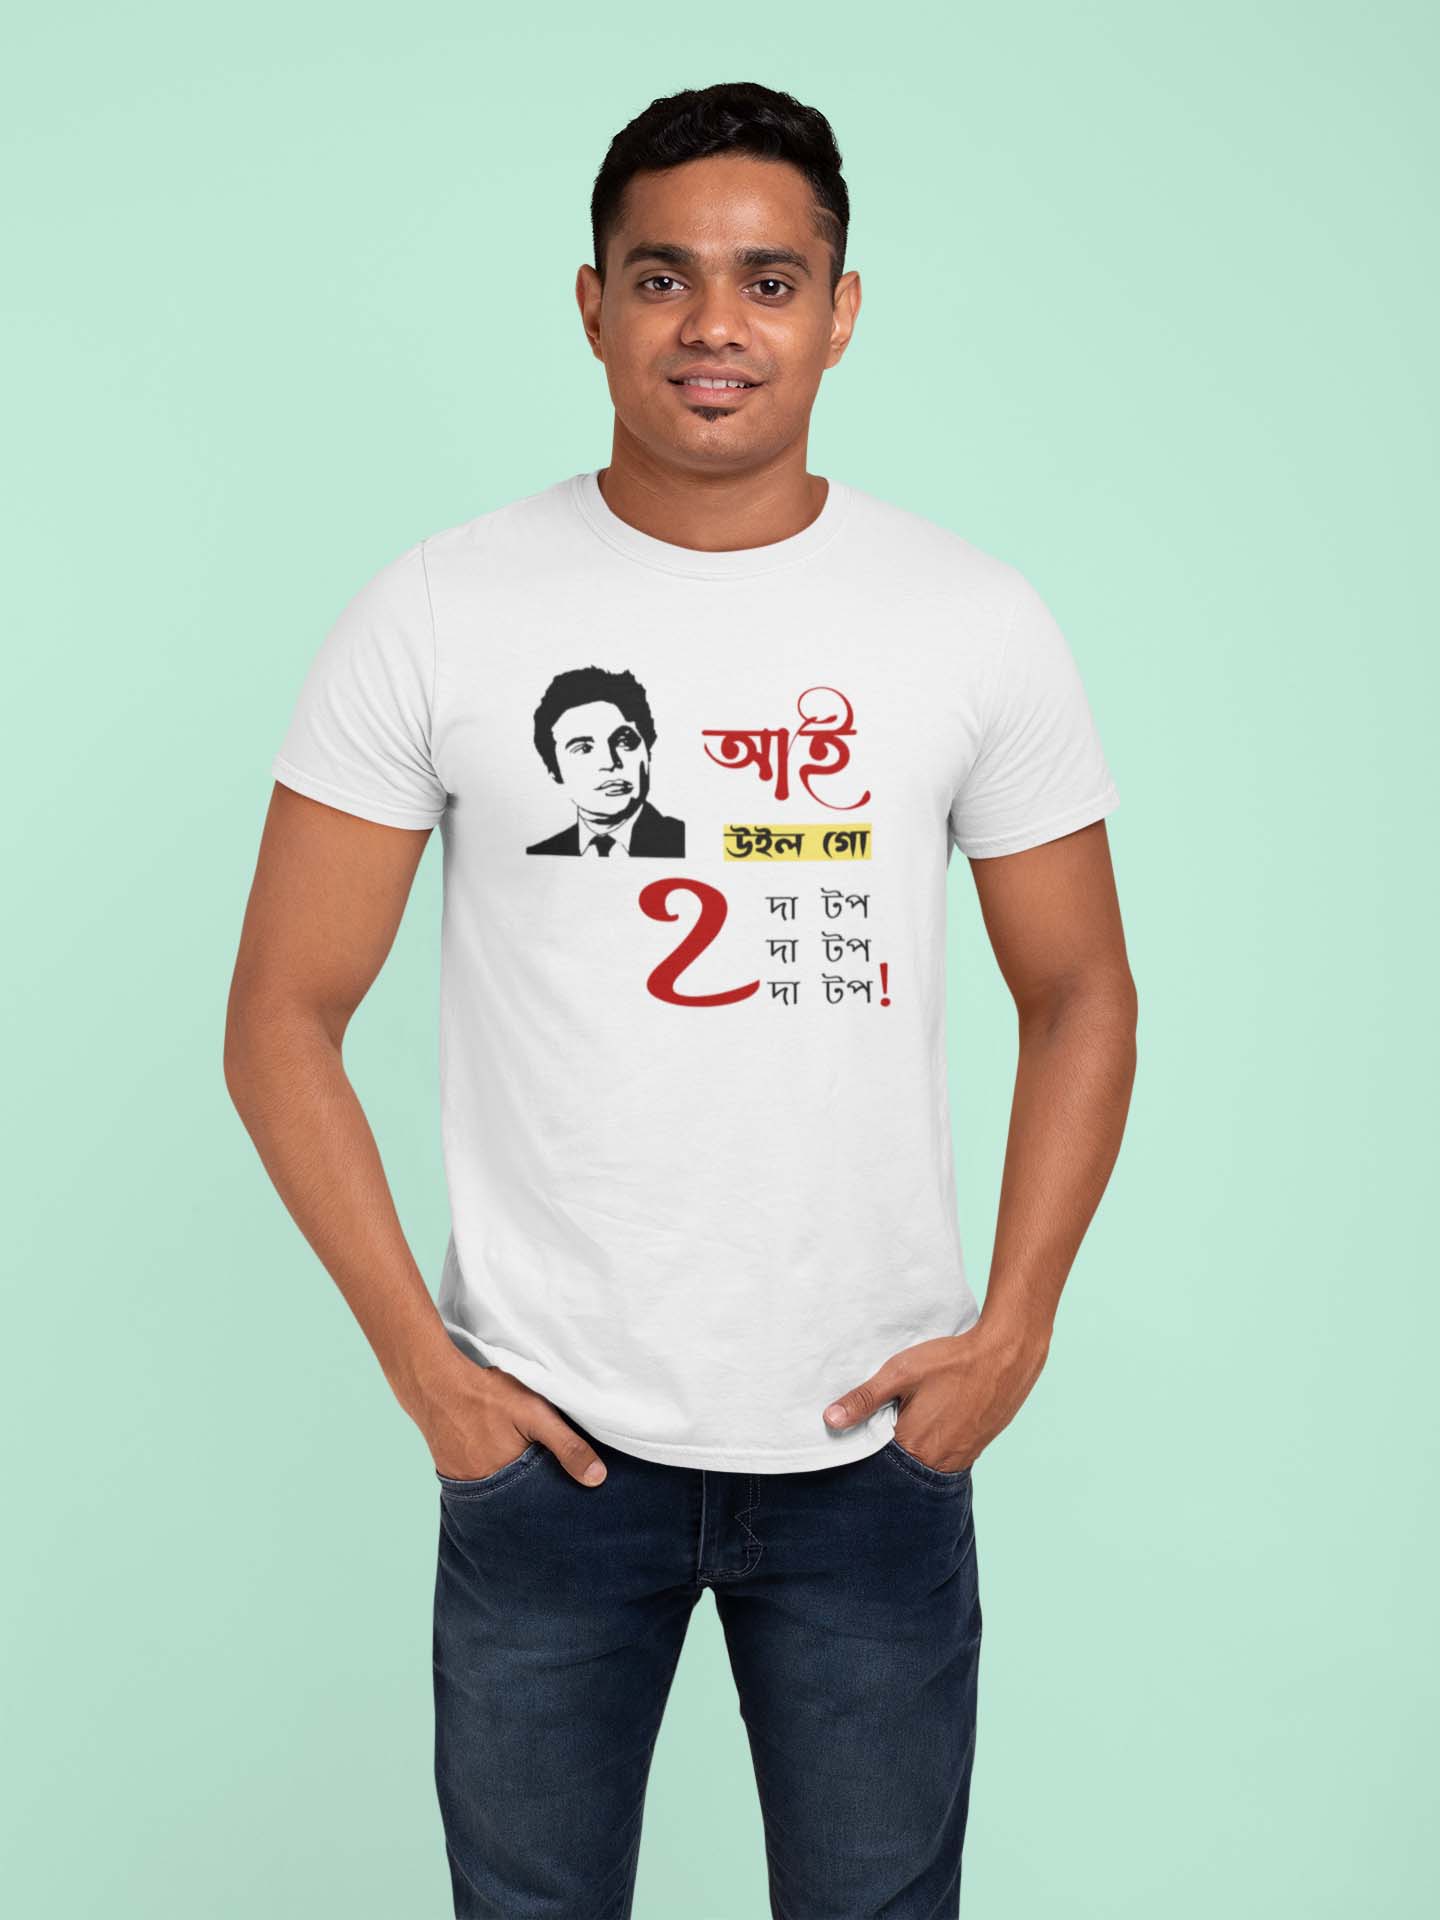 I Will Go to The Top - Uttam Kumar Bengali Graphics T Shirt